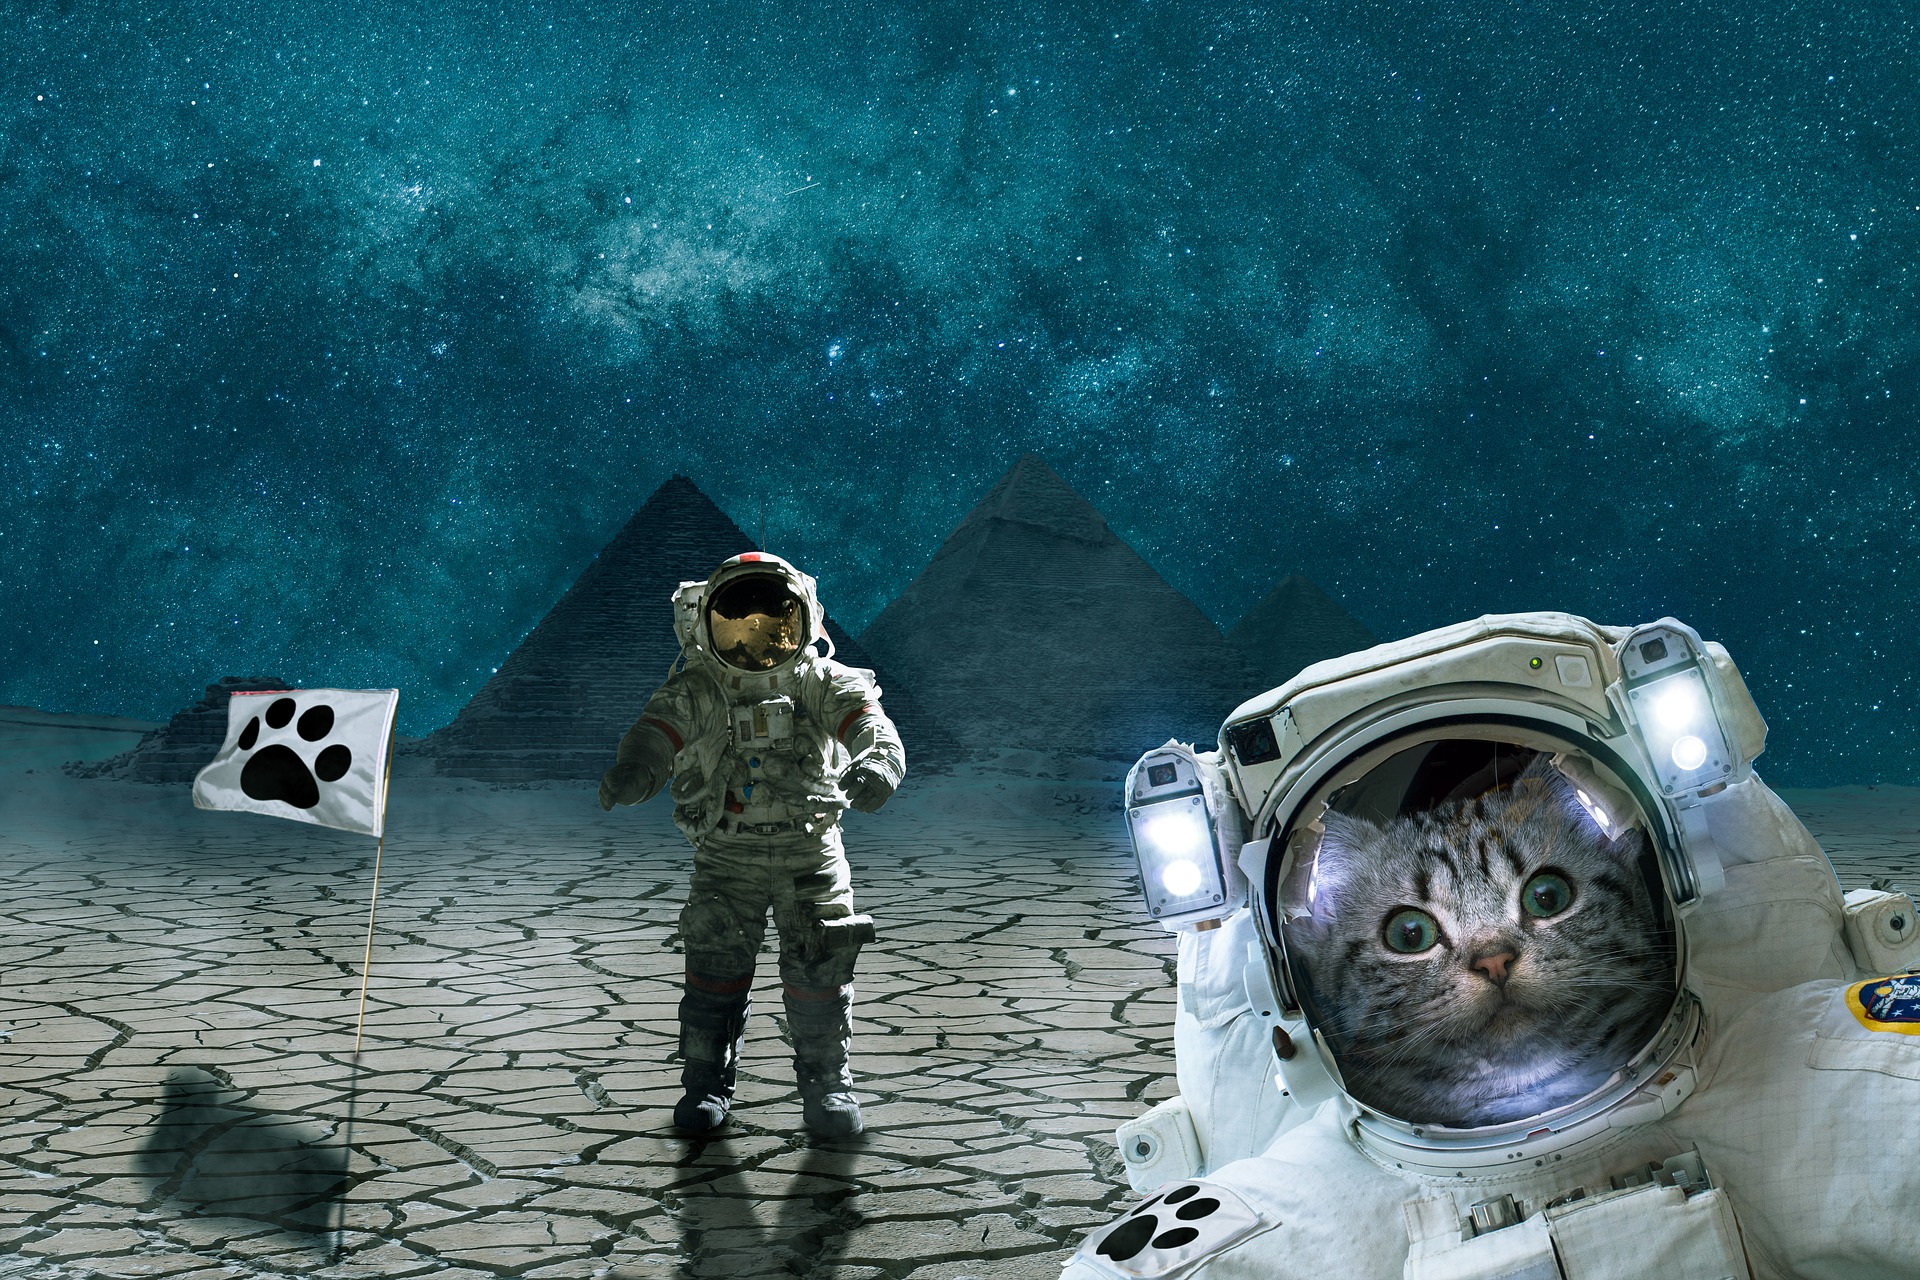 astronaut cat conquers space